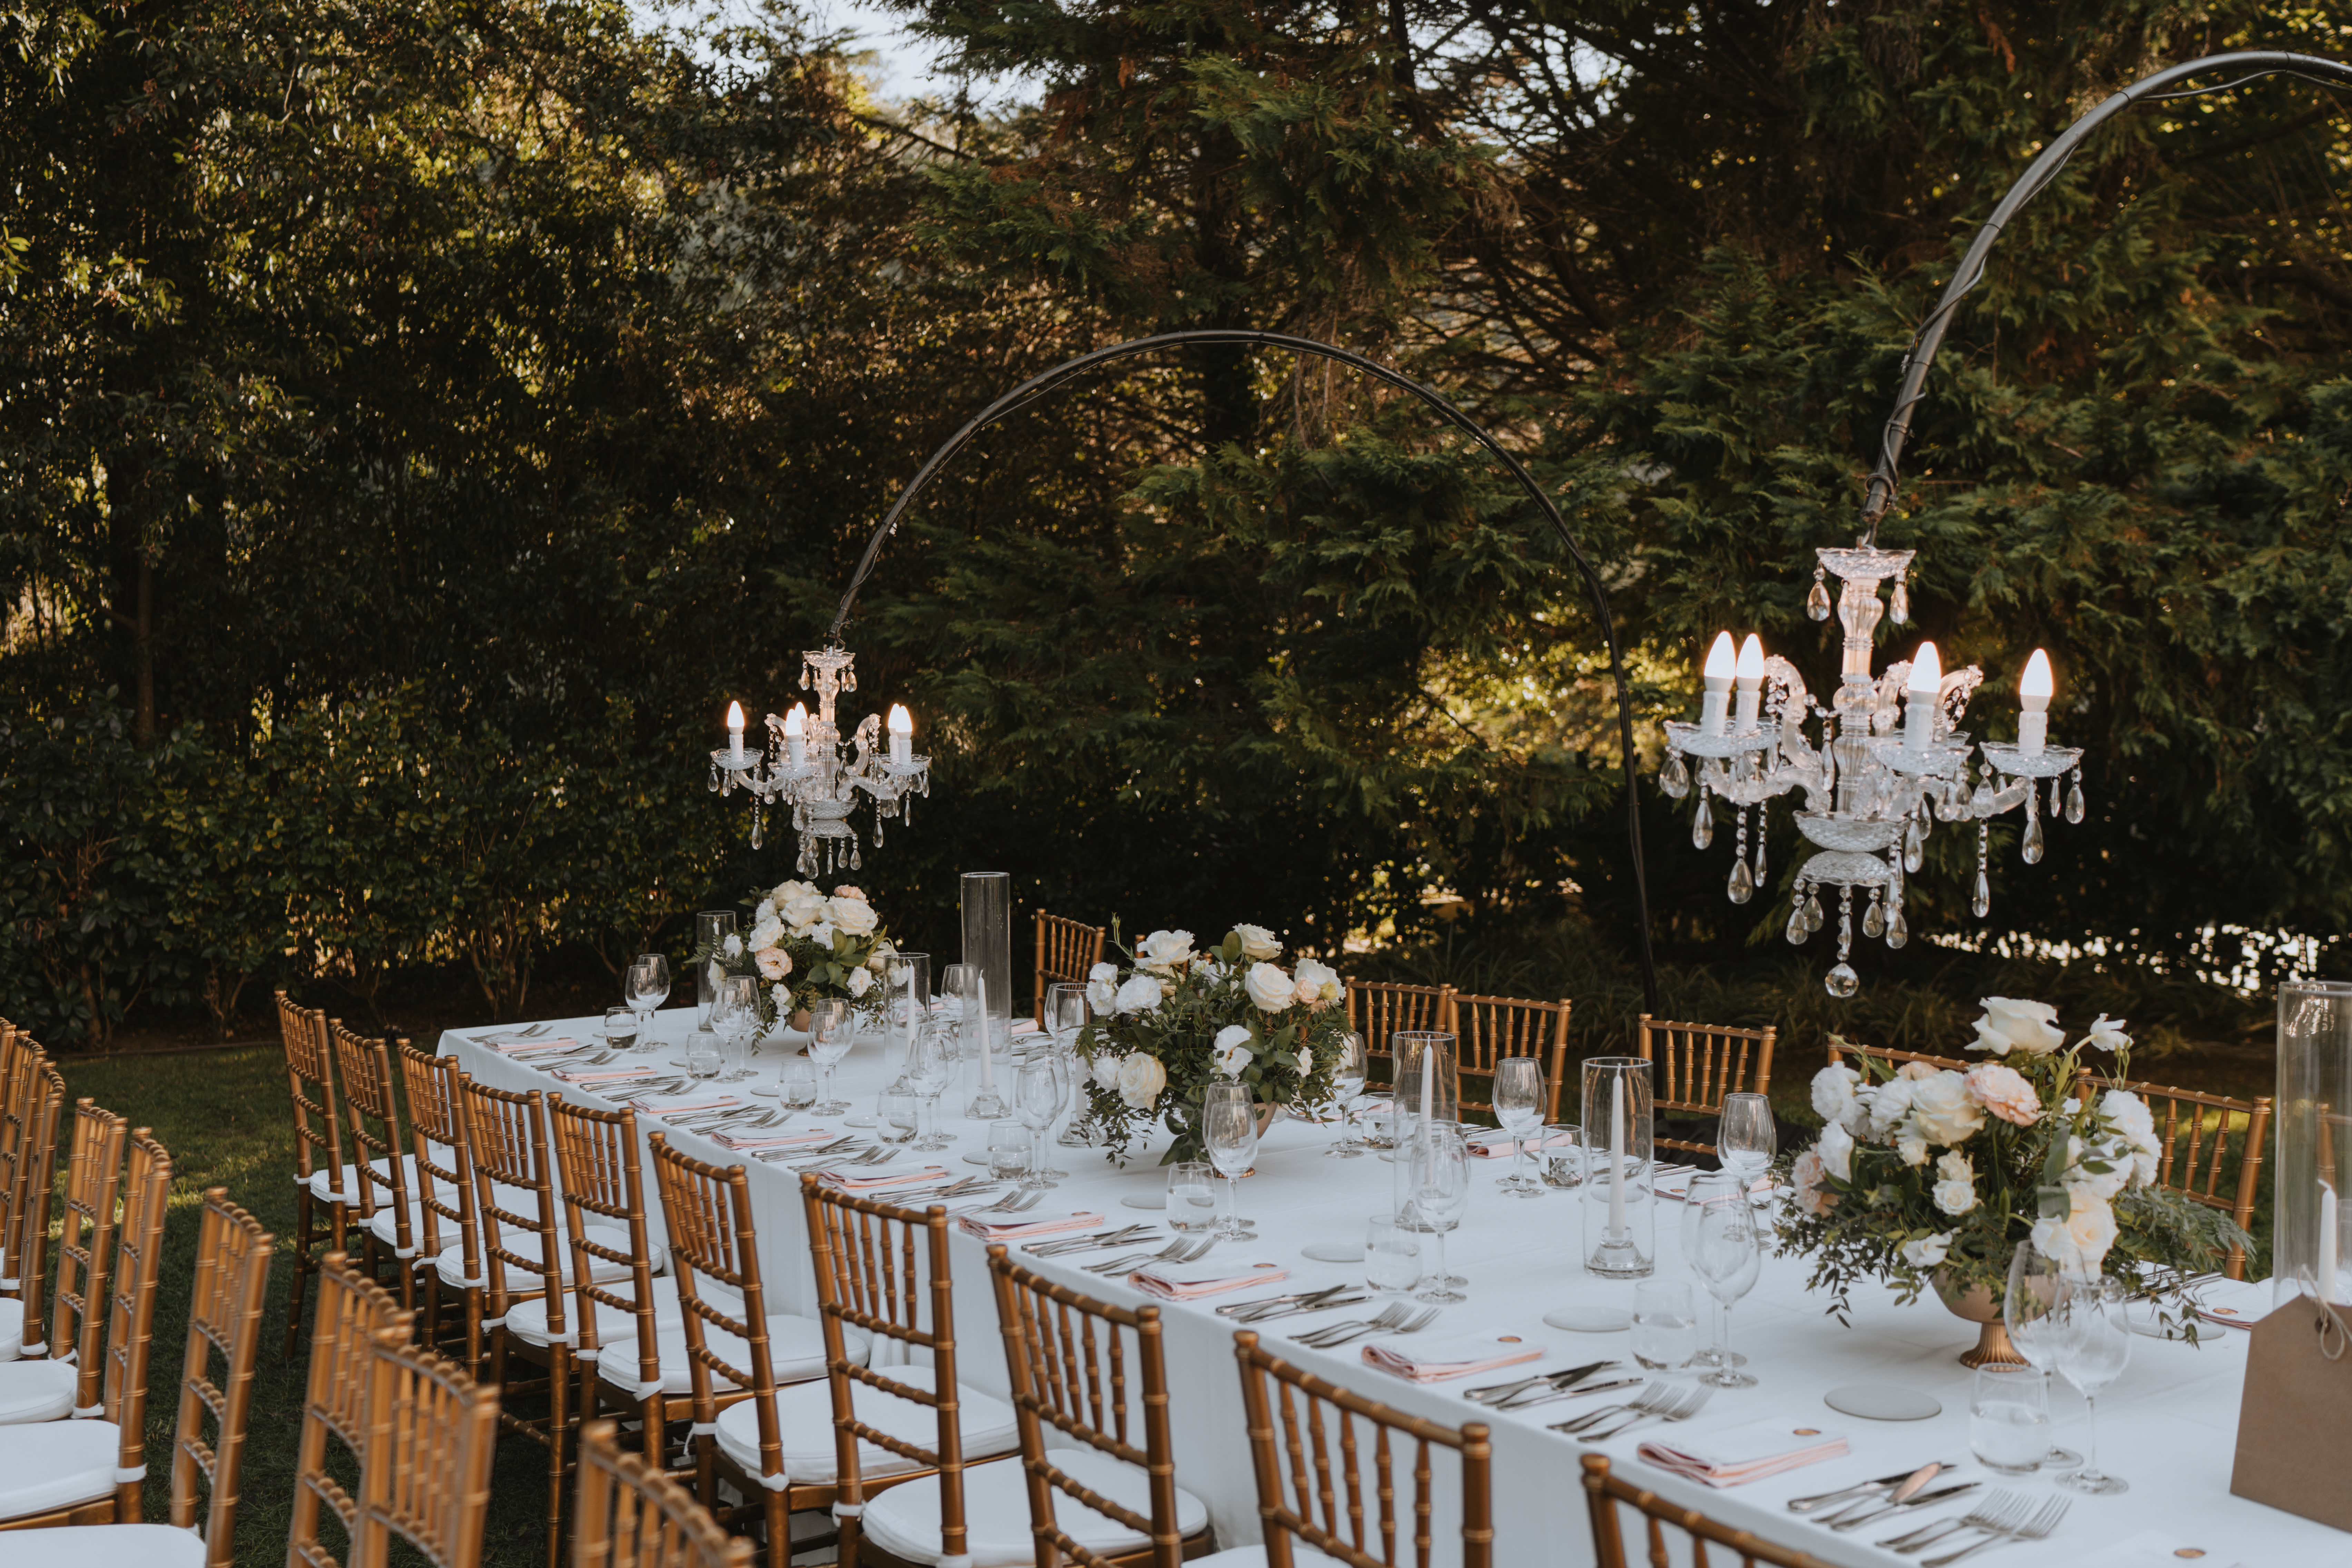 Wedding Planner, Decoração e Mobiliário: Fashion Moments. Espaço: Camélia Gardens. Fotografia: Memorelle Weddings 